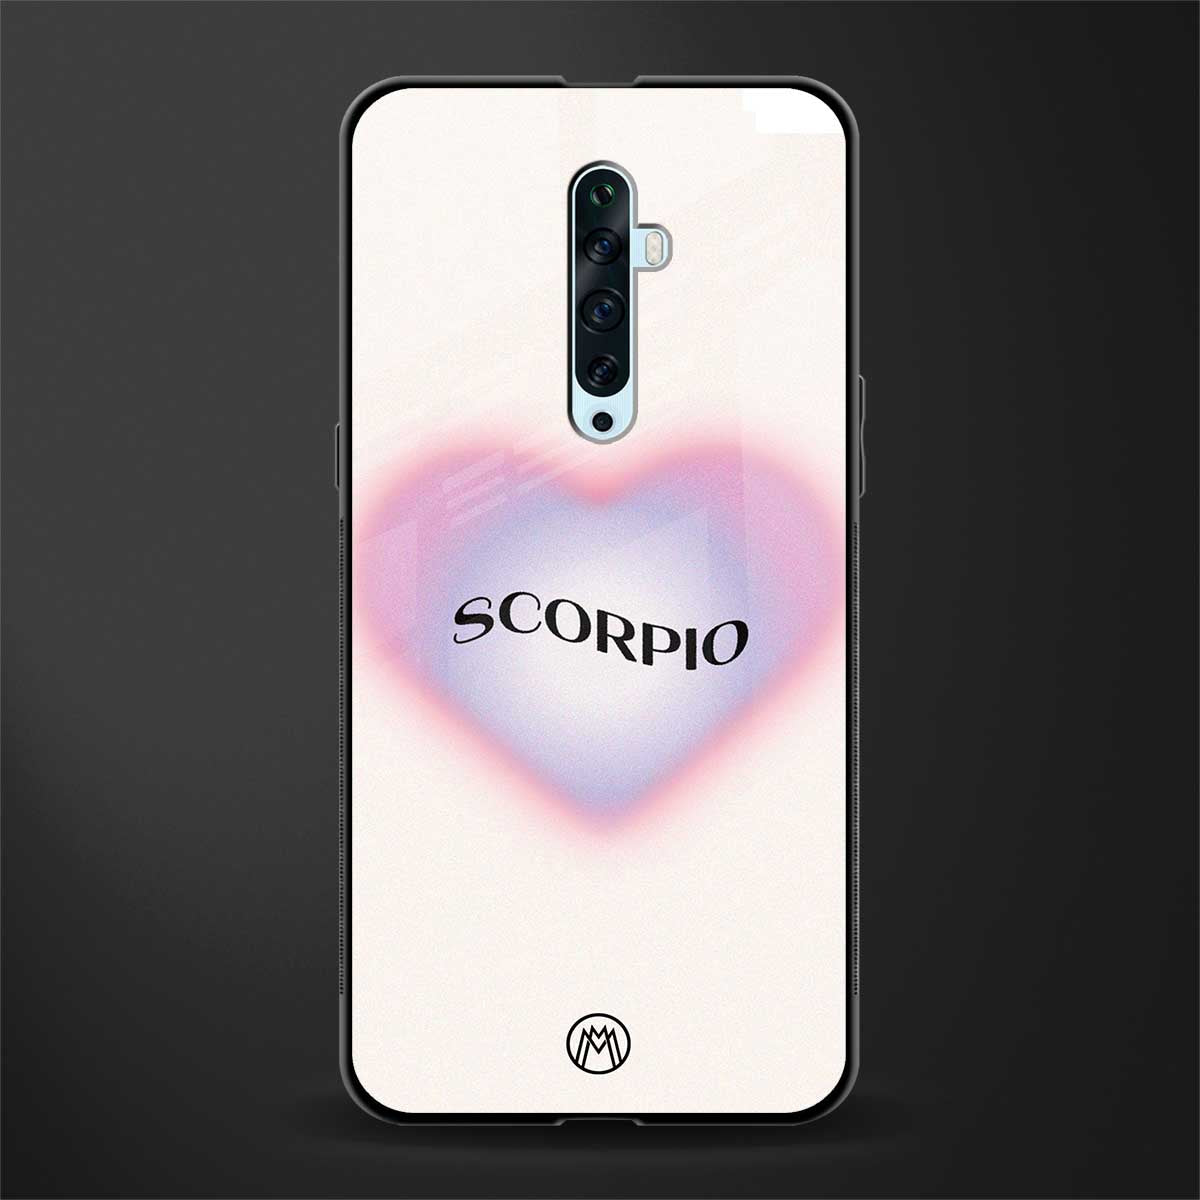 scorpio minimalistic glass case for oppo reno 2z image